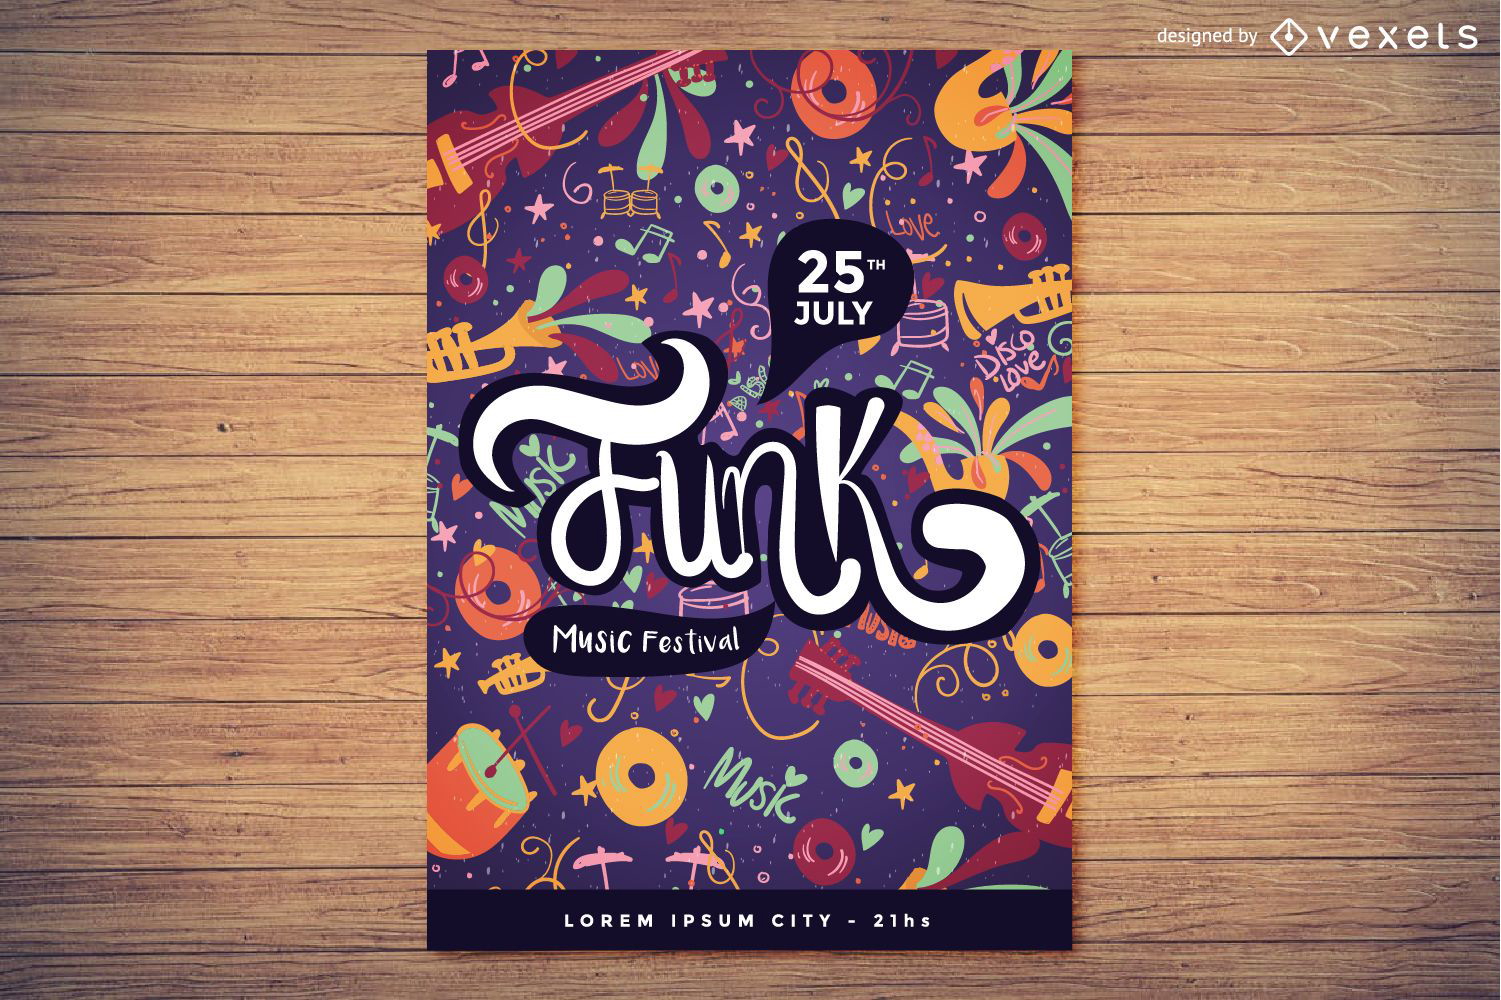 Design de cartaz do festival de m?sica funk